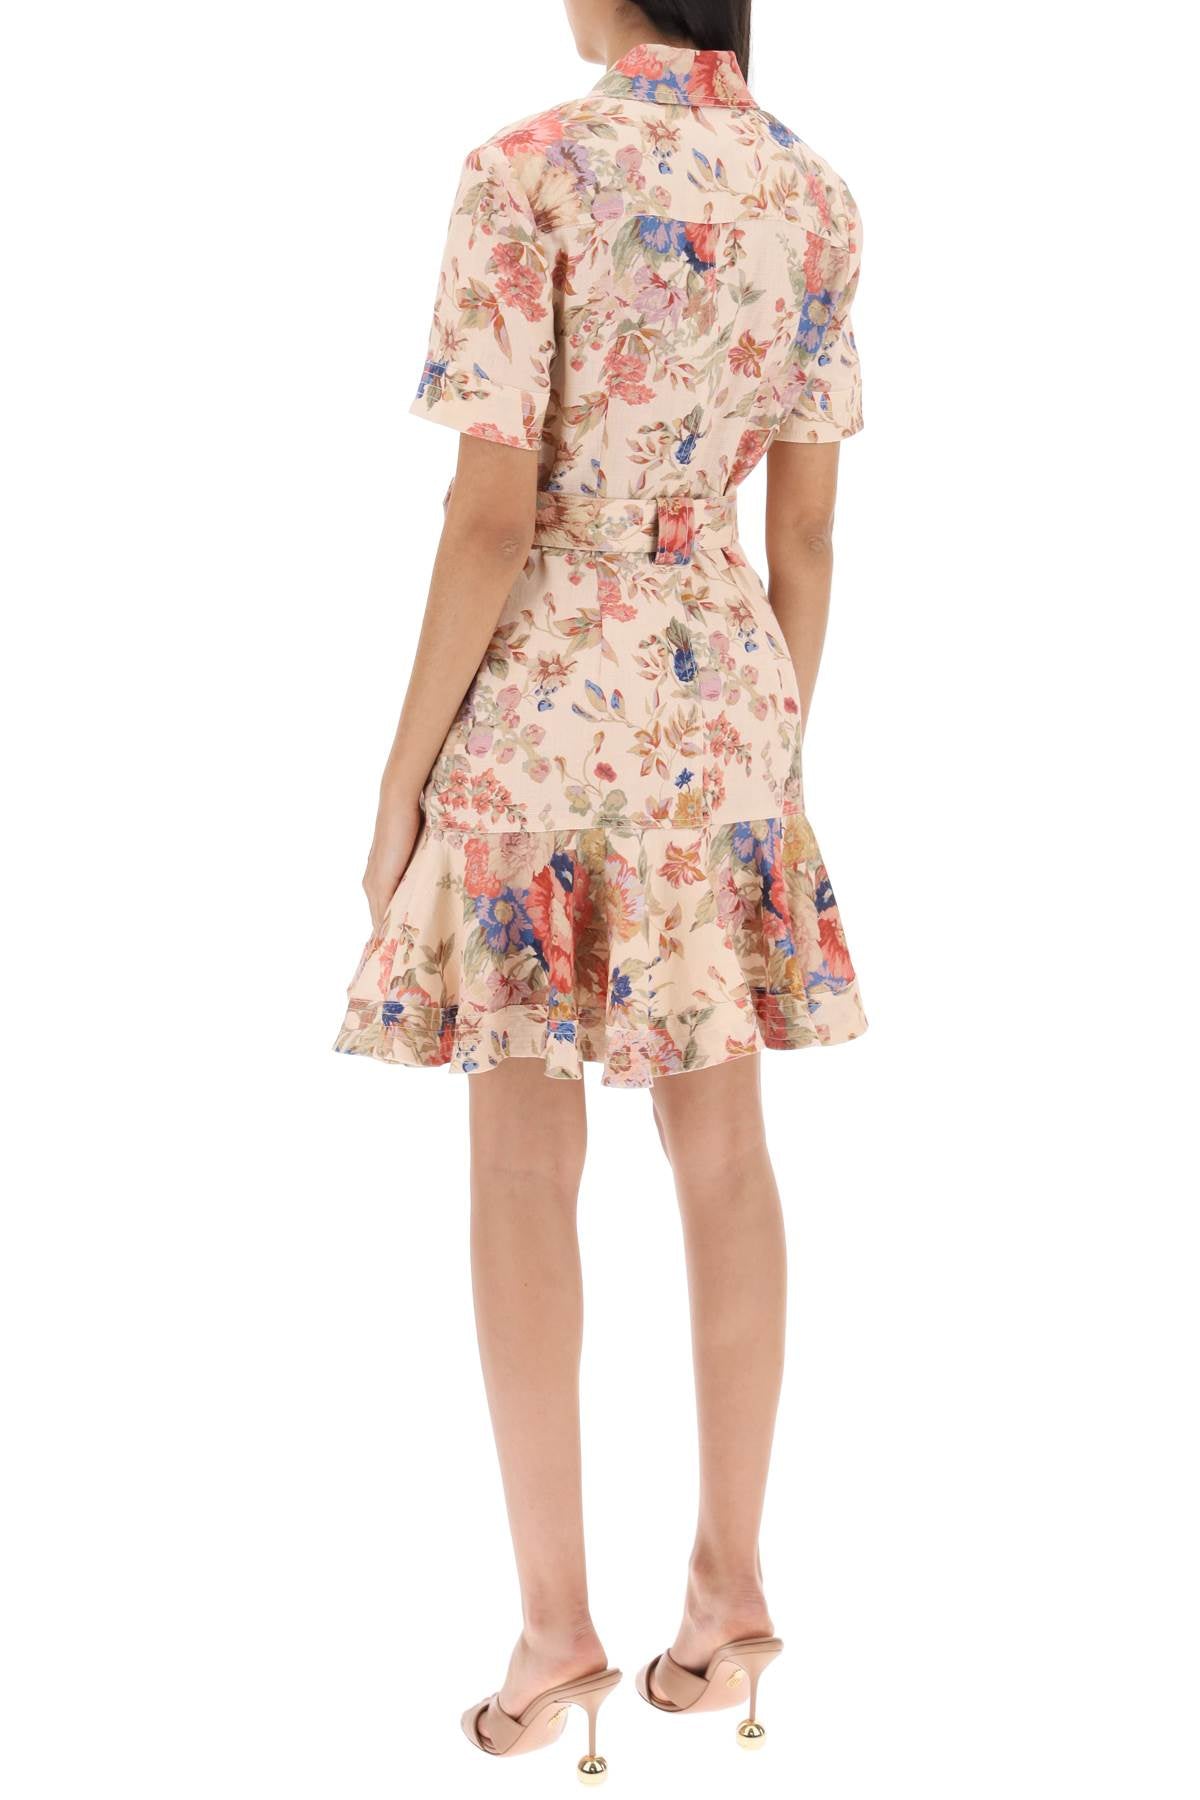 ZIMMERMANN Floral Print Belted Linen Mini Dress - Cream Floral Linen/Flax - Tonal Stitching - Short Sleeves - Peplum Hem - Above-Knee Length